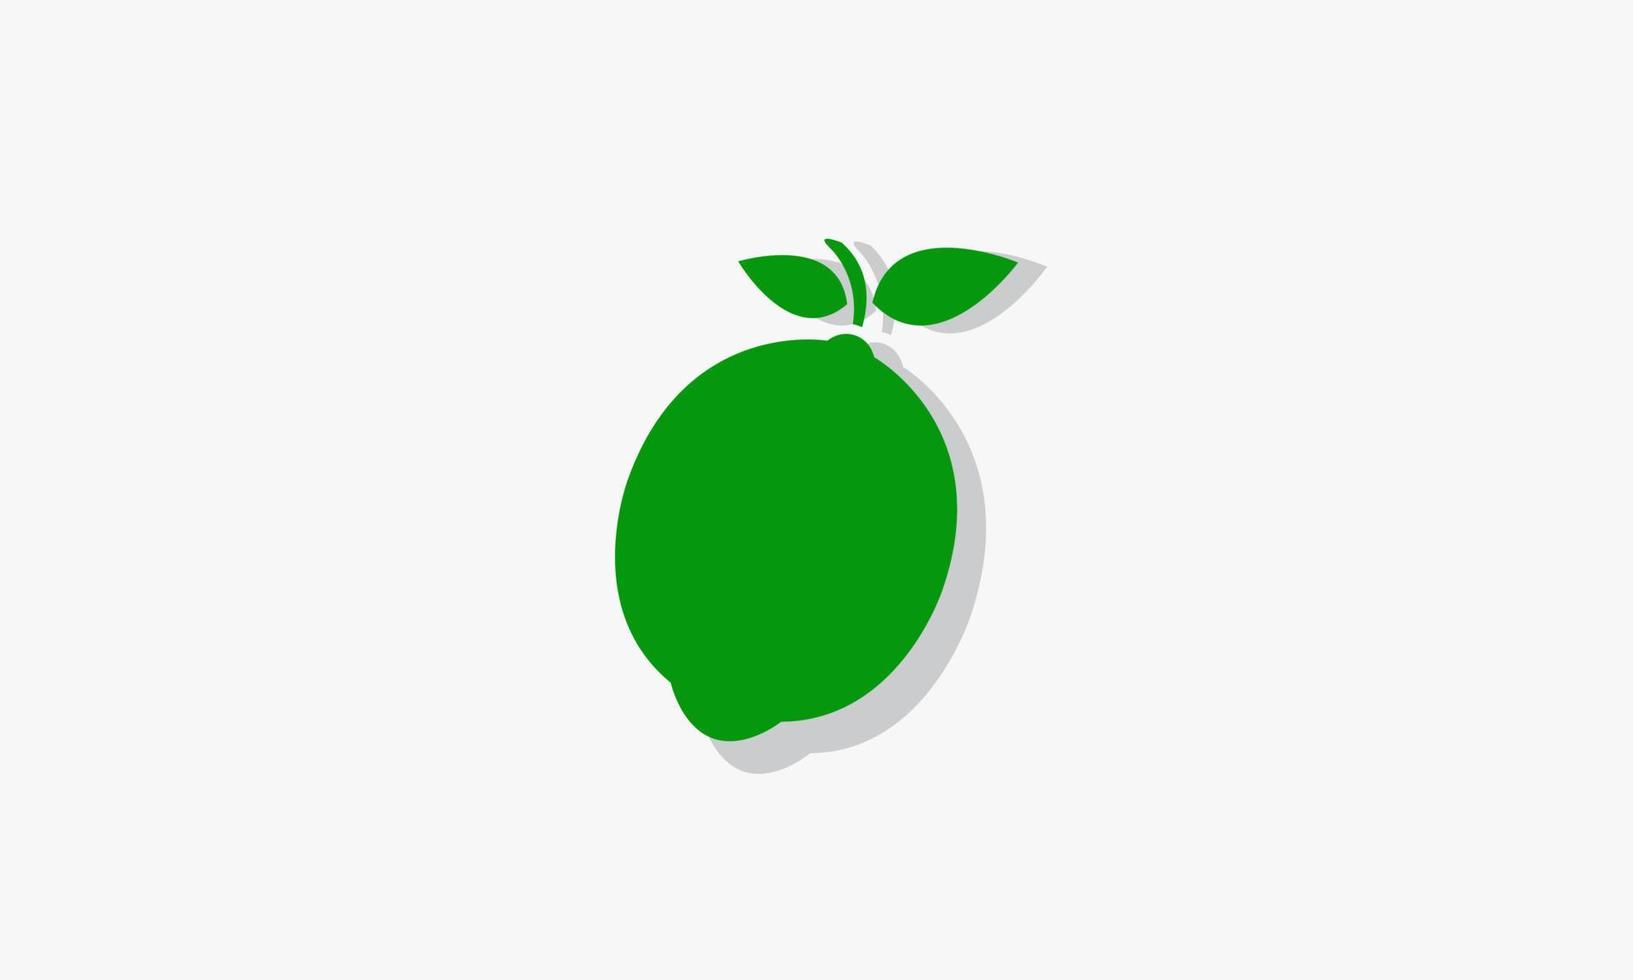 green lemon lime with shadow logo design vector. vector